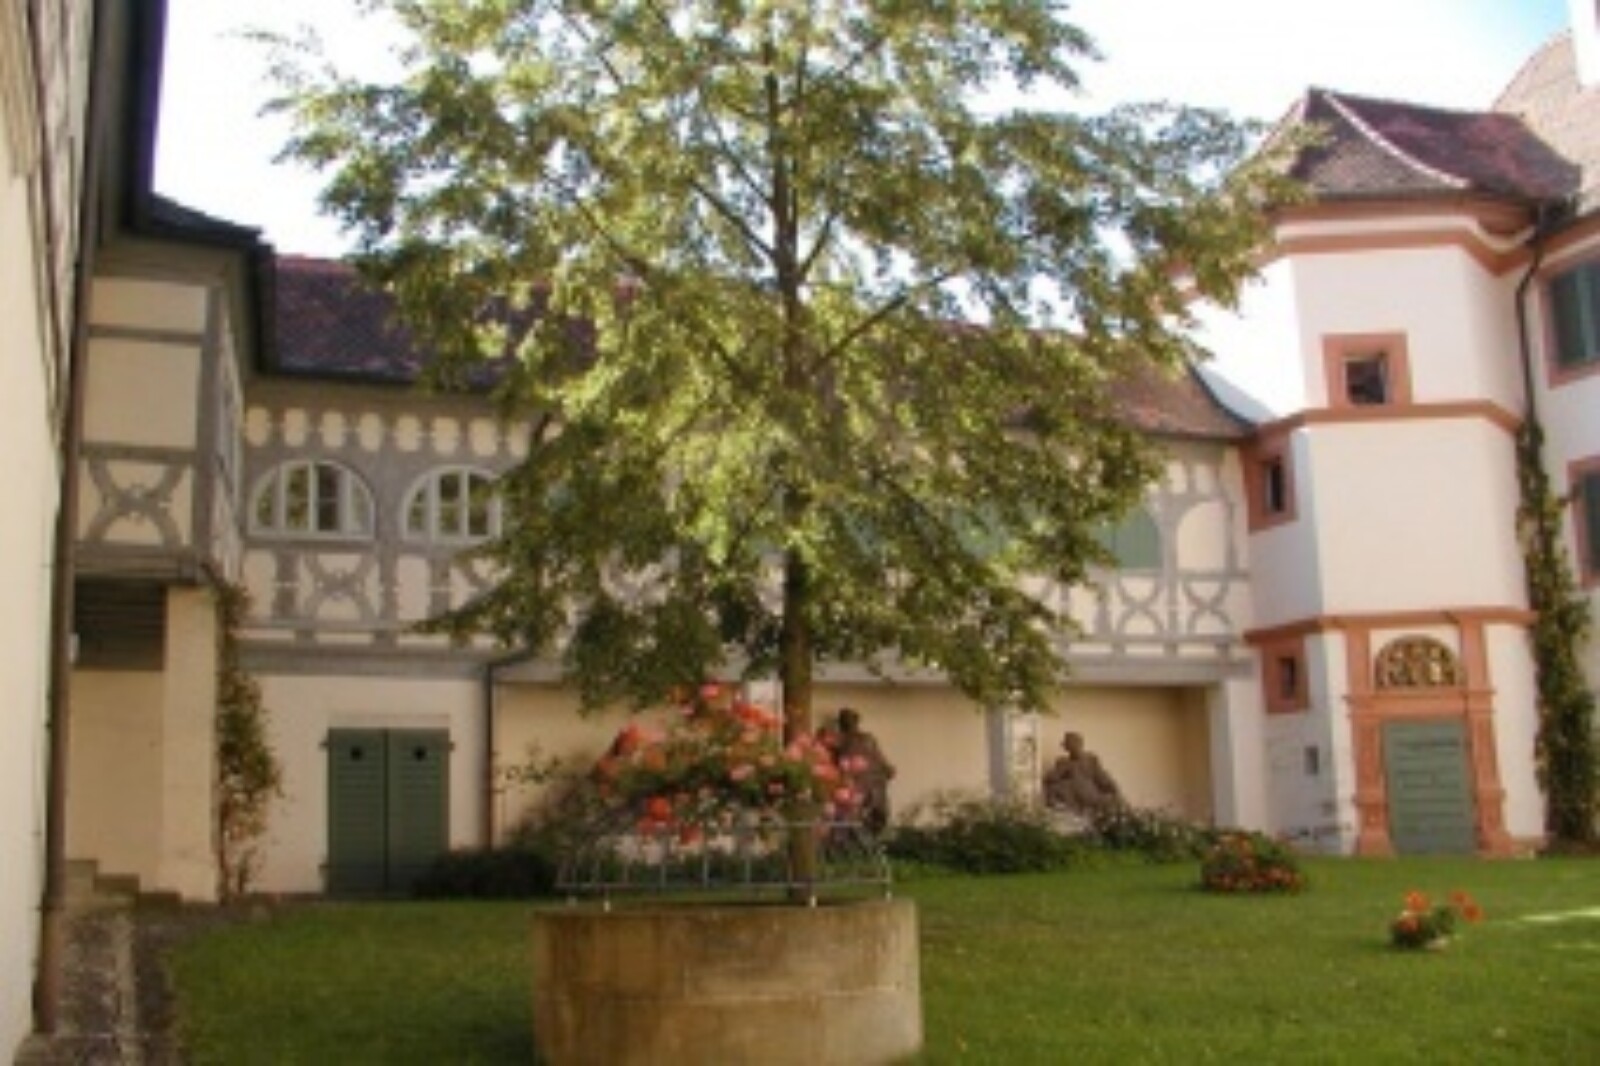 Domherrenhof